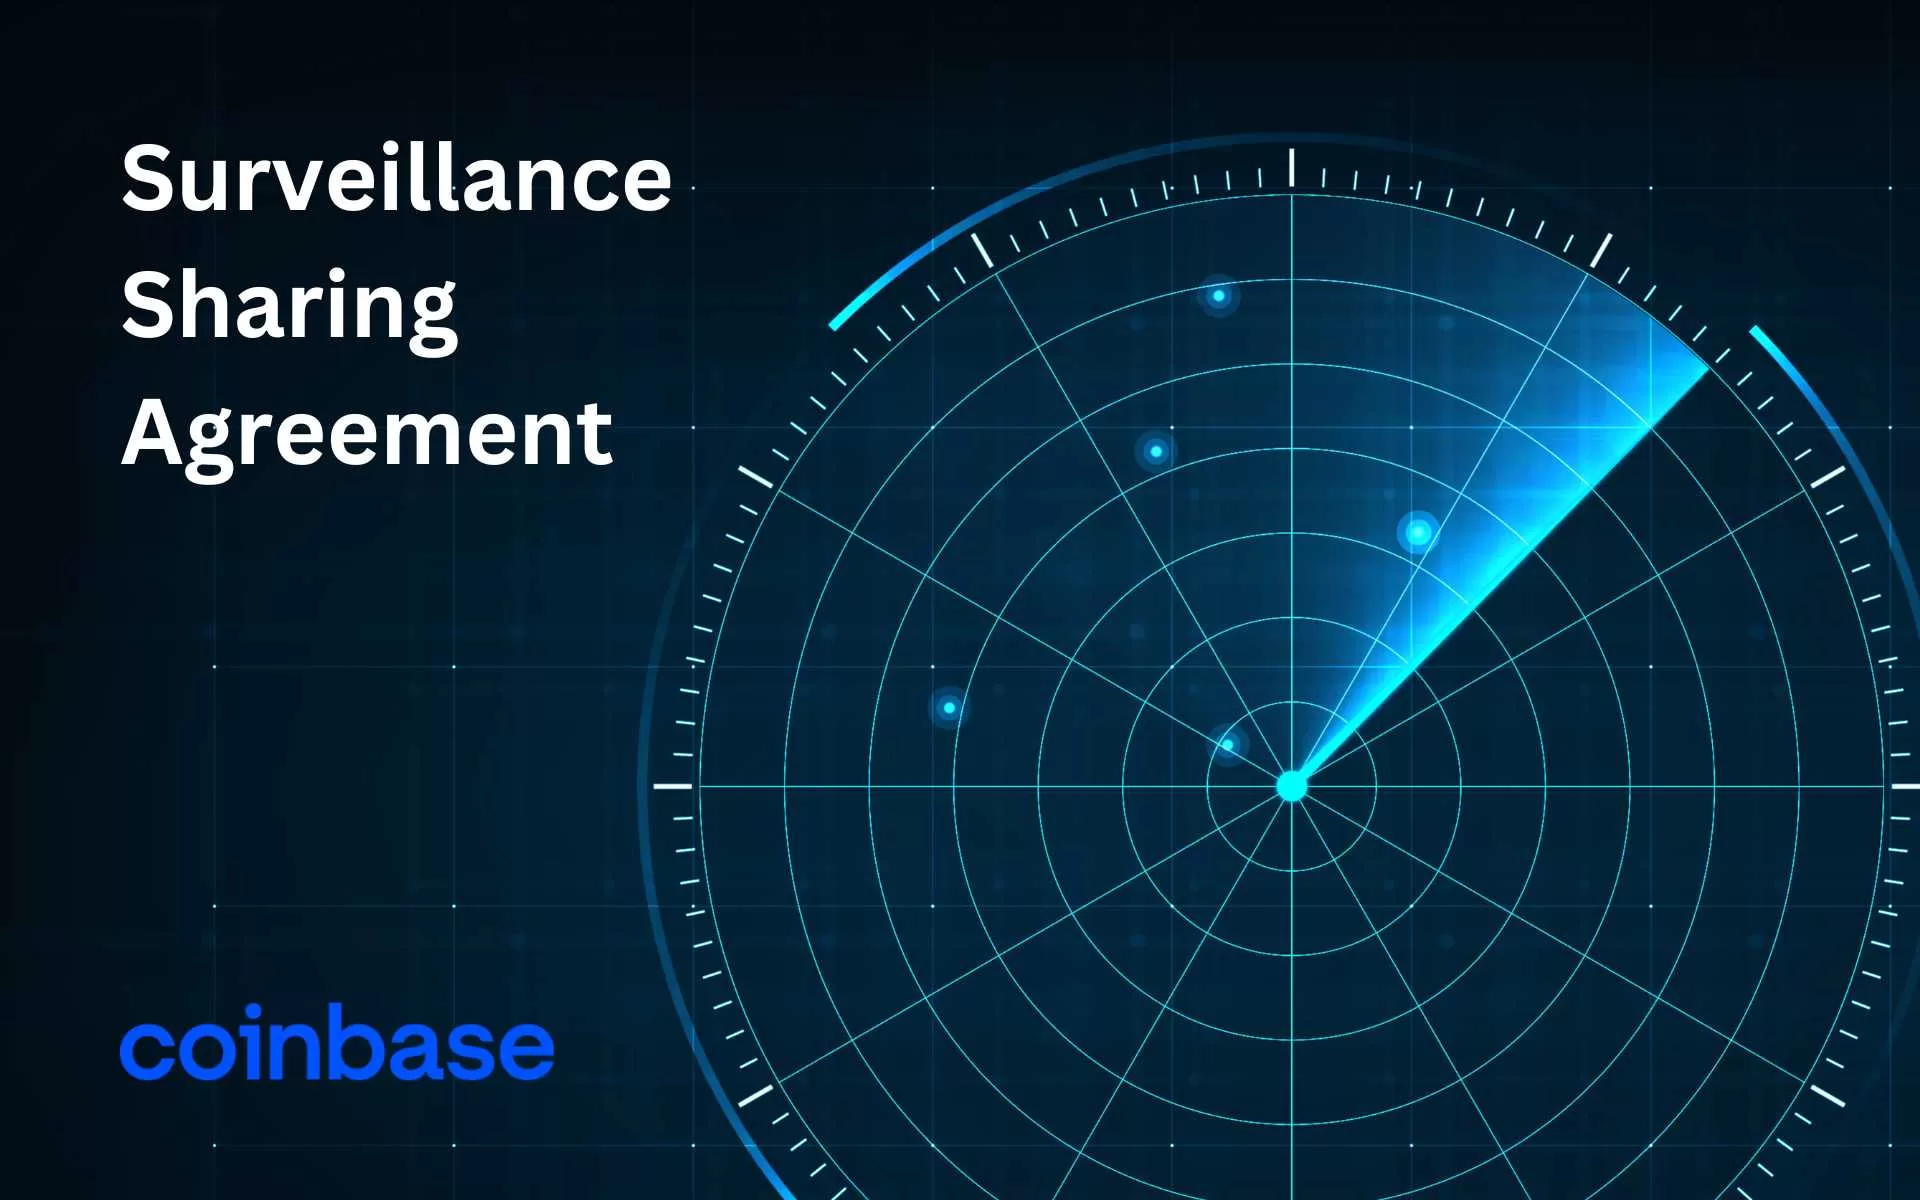 Surveillance Sharing Agreement (SSA)